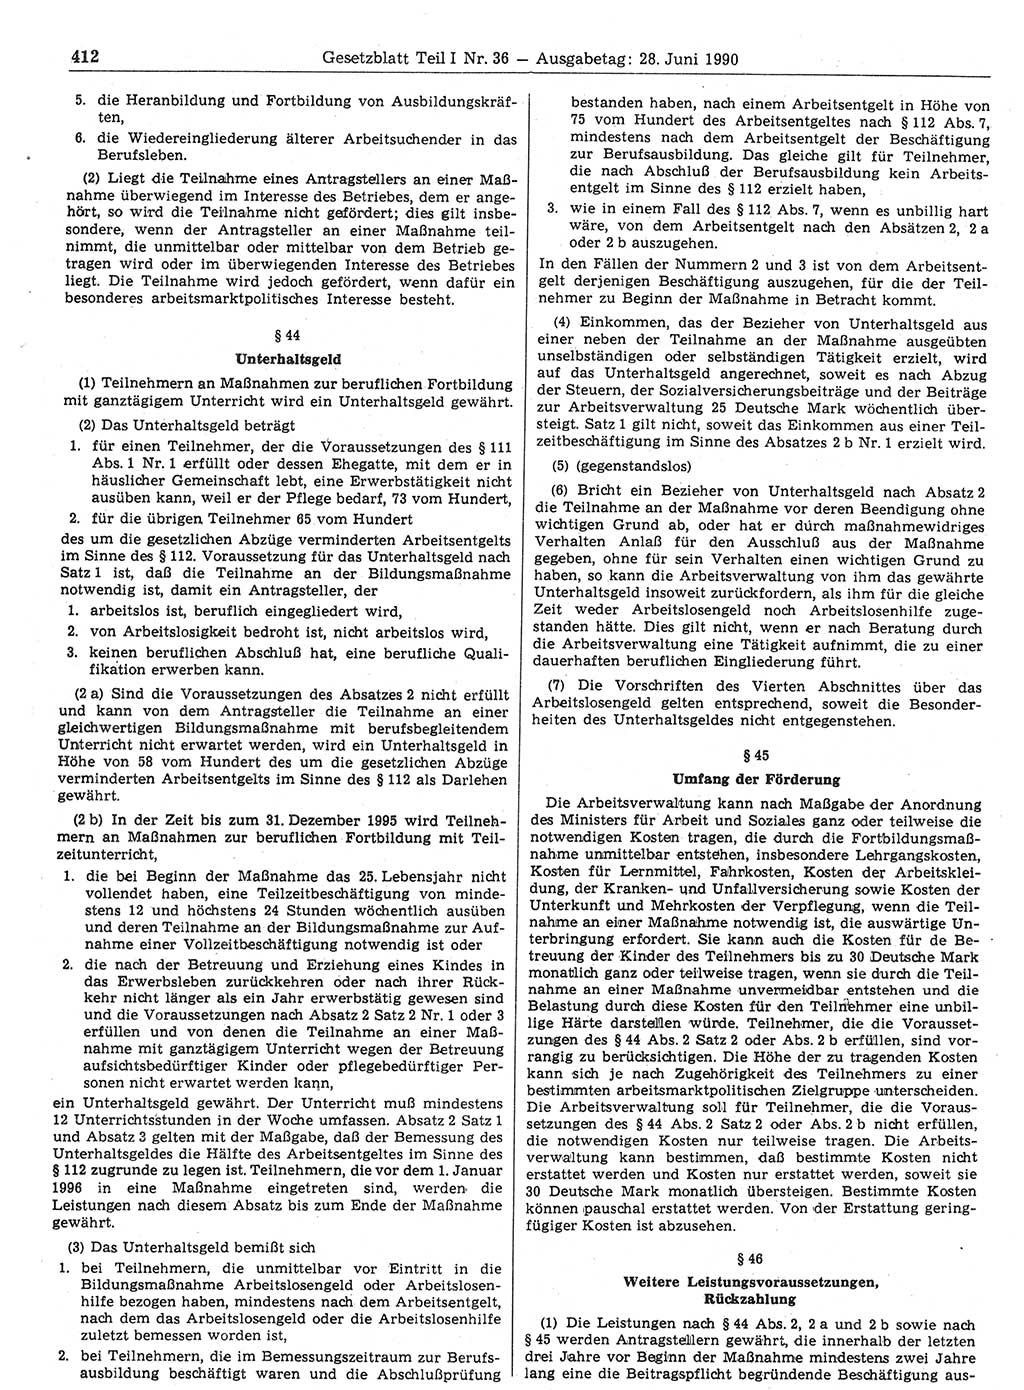 Gesetzblatt (GBl.) der Deutschen Demokratischen Republik (DDR) Teil Ⅰ 1990, Seite 412 (GBl. DDR Ⅰ 1990, S. 412)